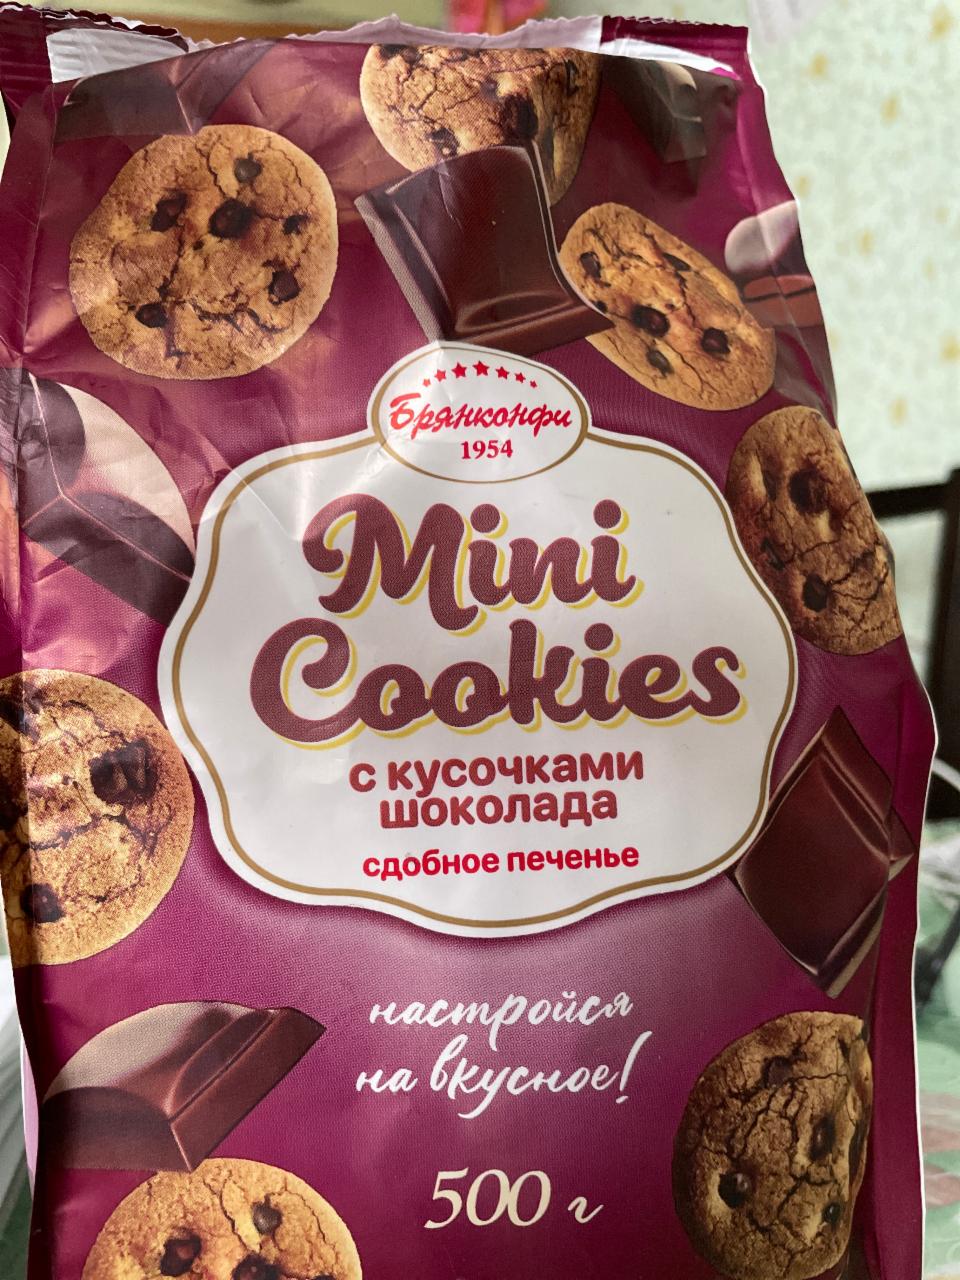 Фото - Minutes Cookies с кусочками шоколада сдобное печенье Брянконфи